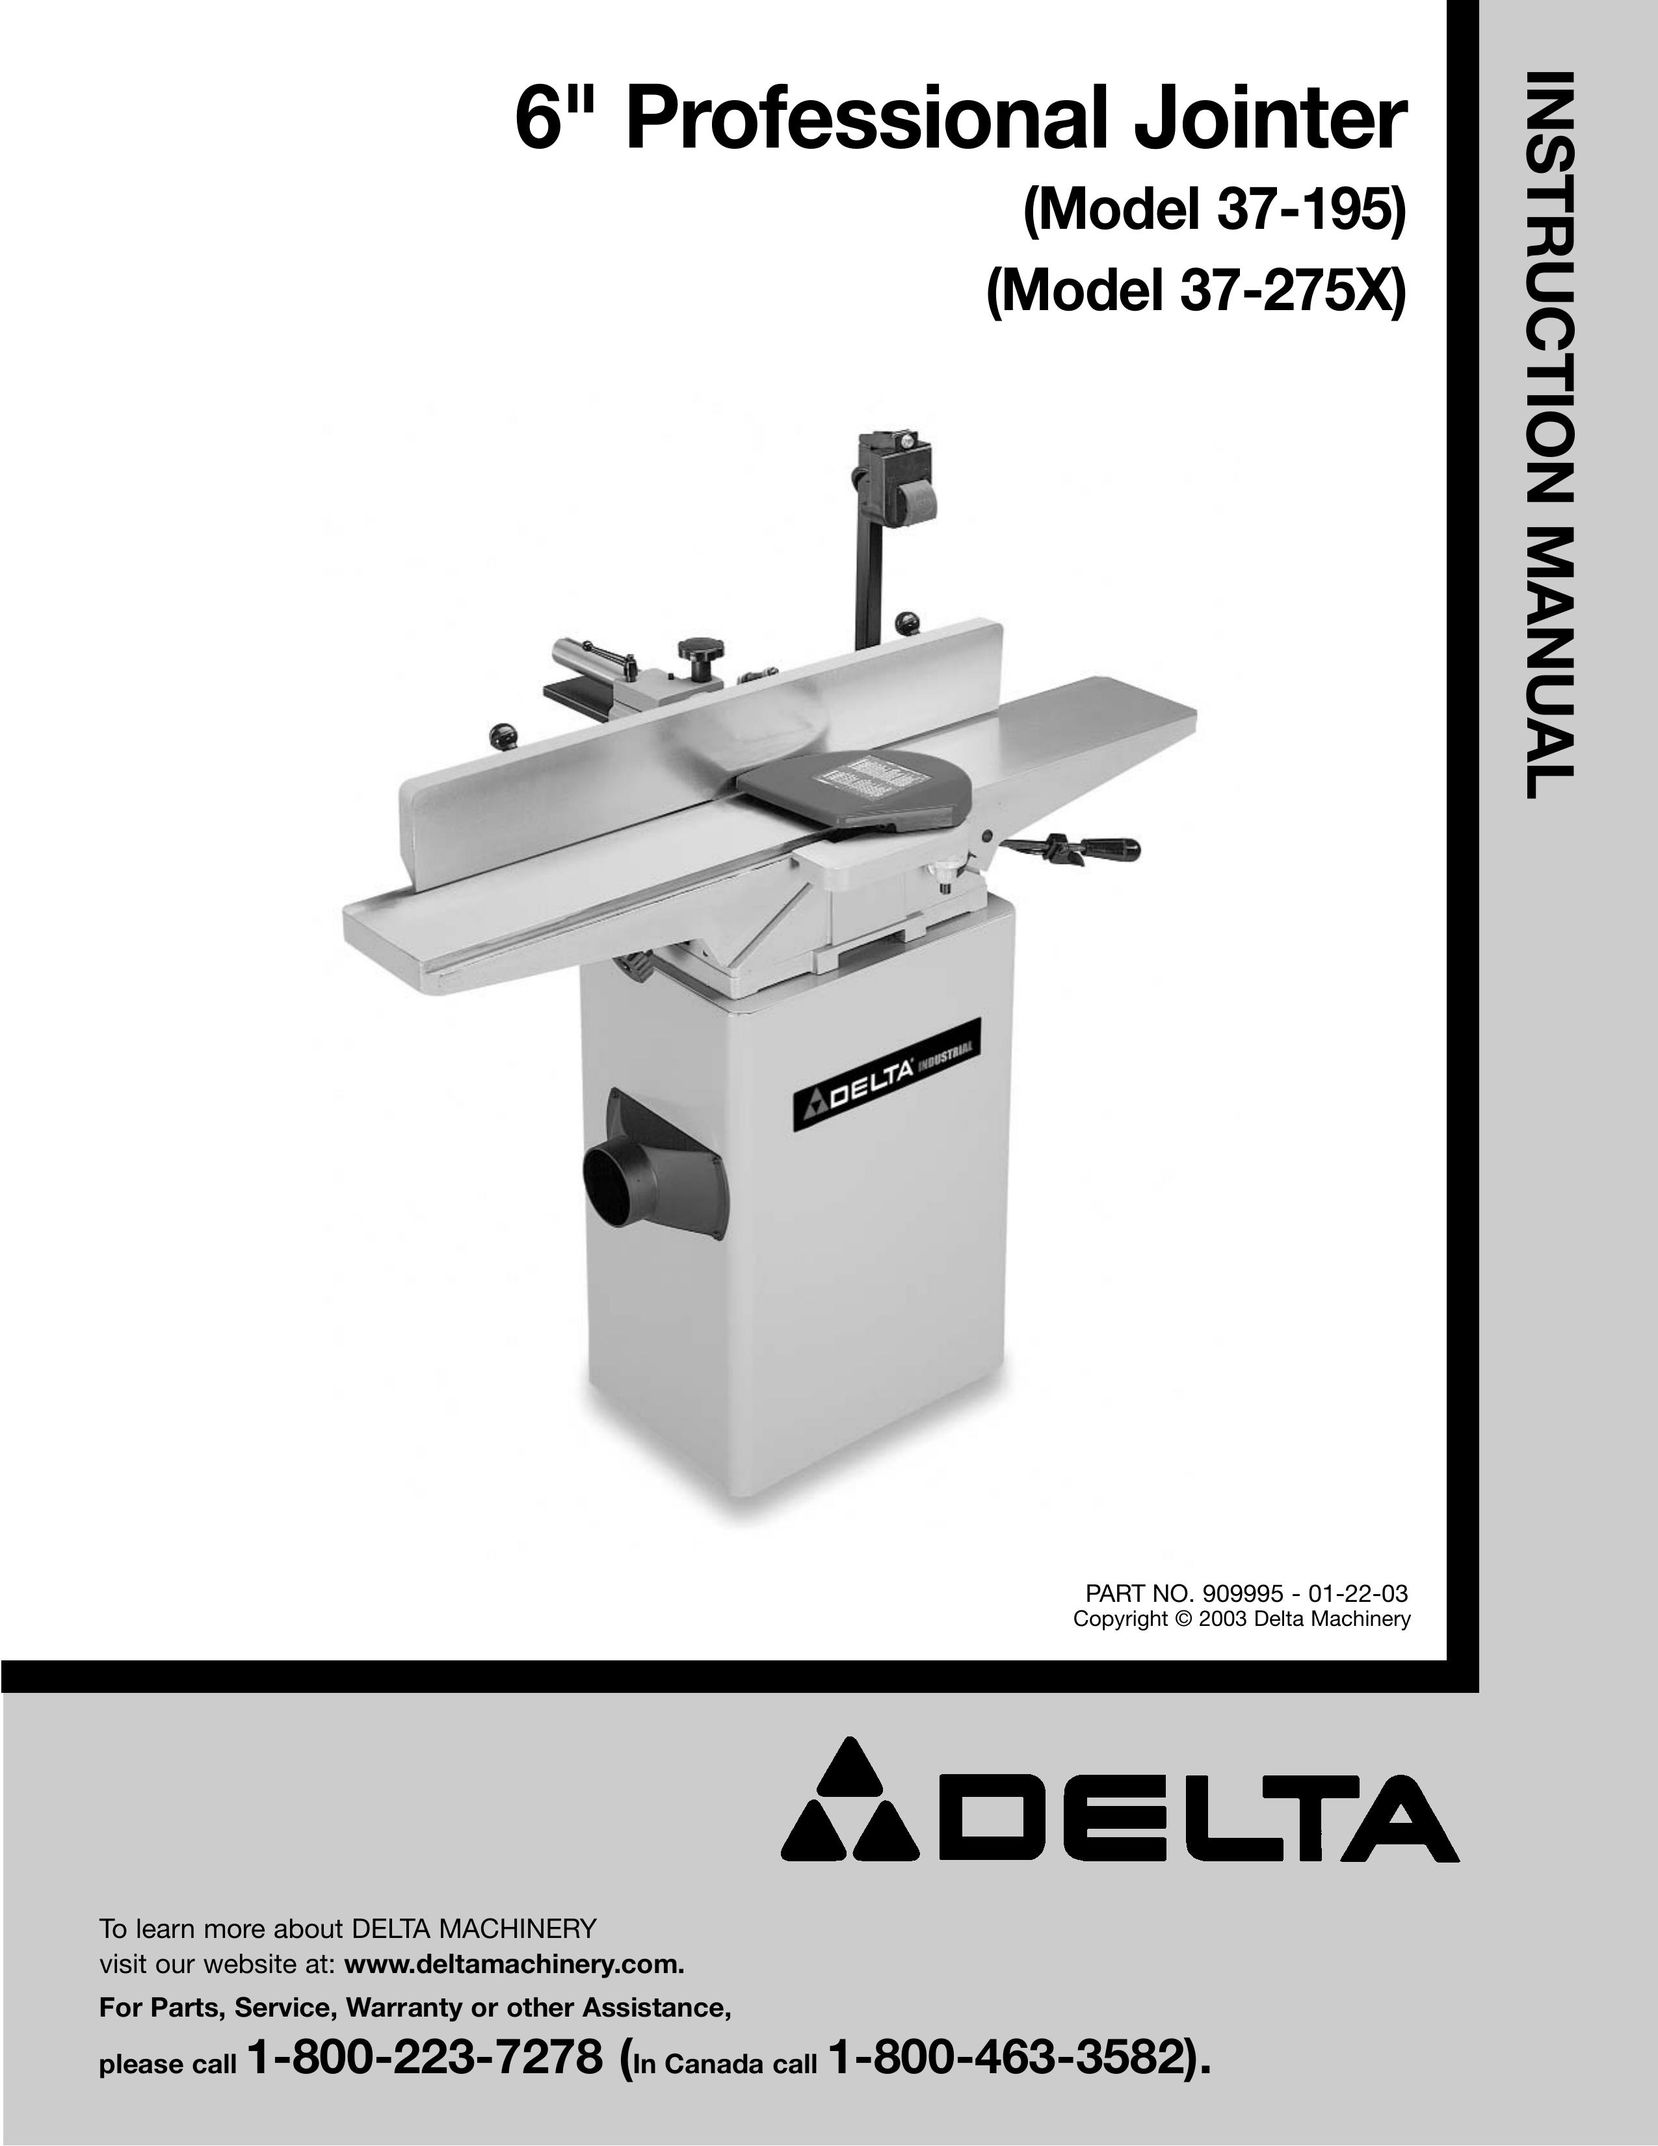 Delta 37-275X Biscuit Joiner User Manual